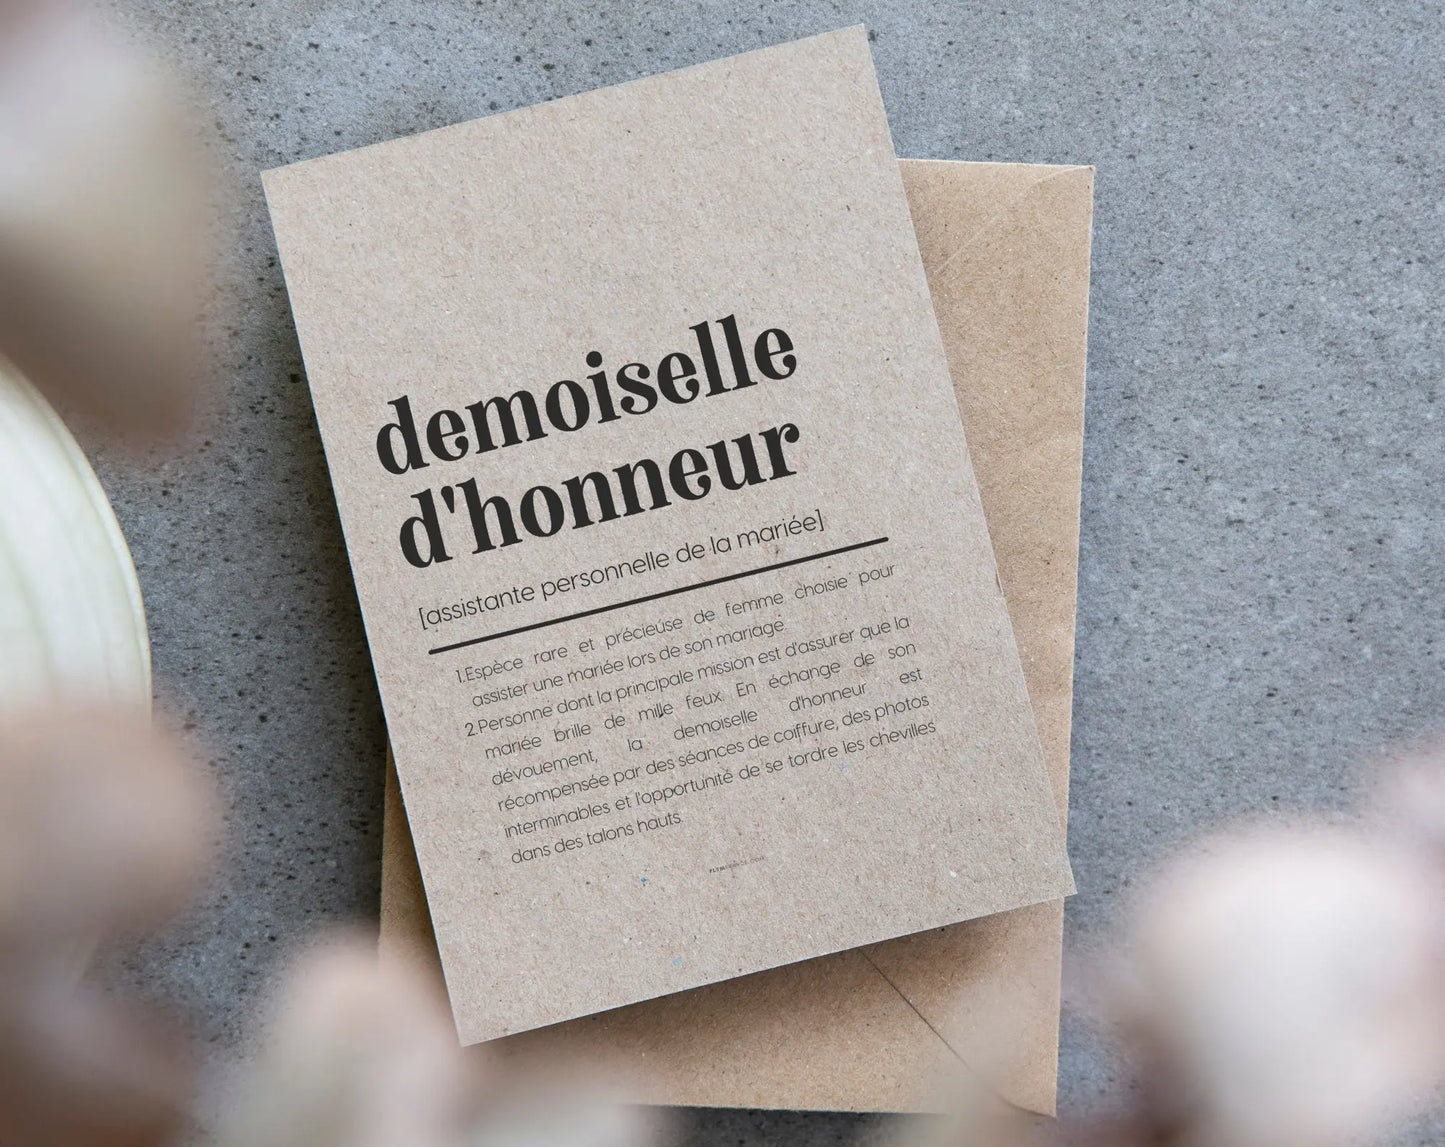 Carte définition Demoiselle d'honneur - Demande demoiselle d'honneur mariage FLTMfrance